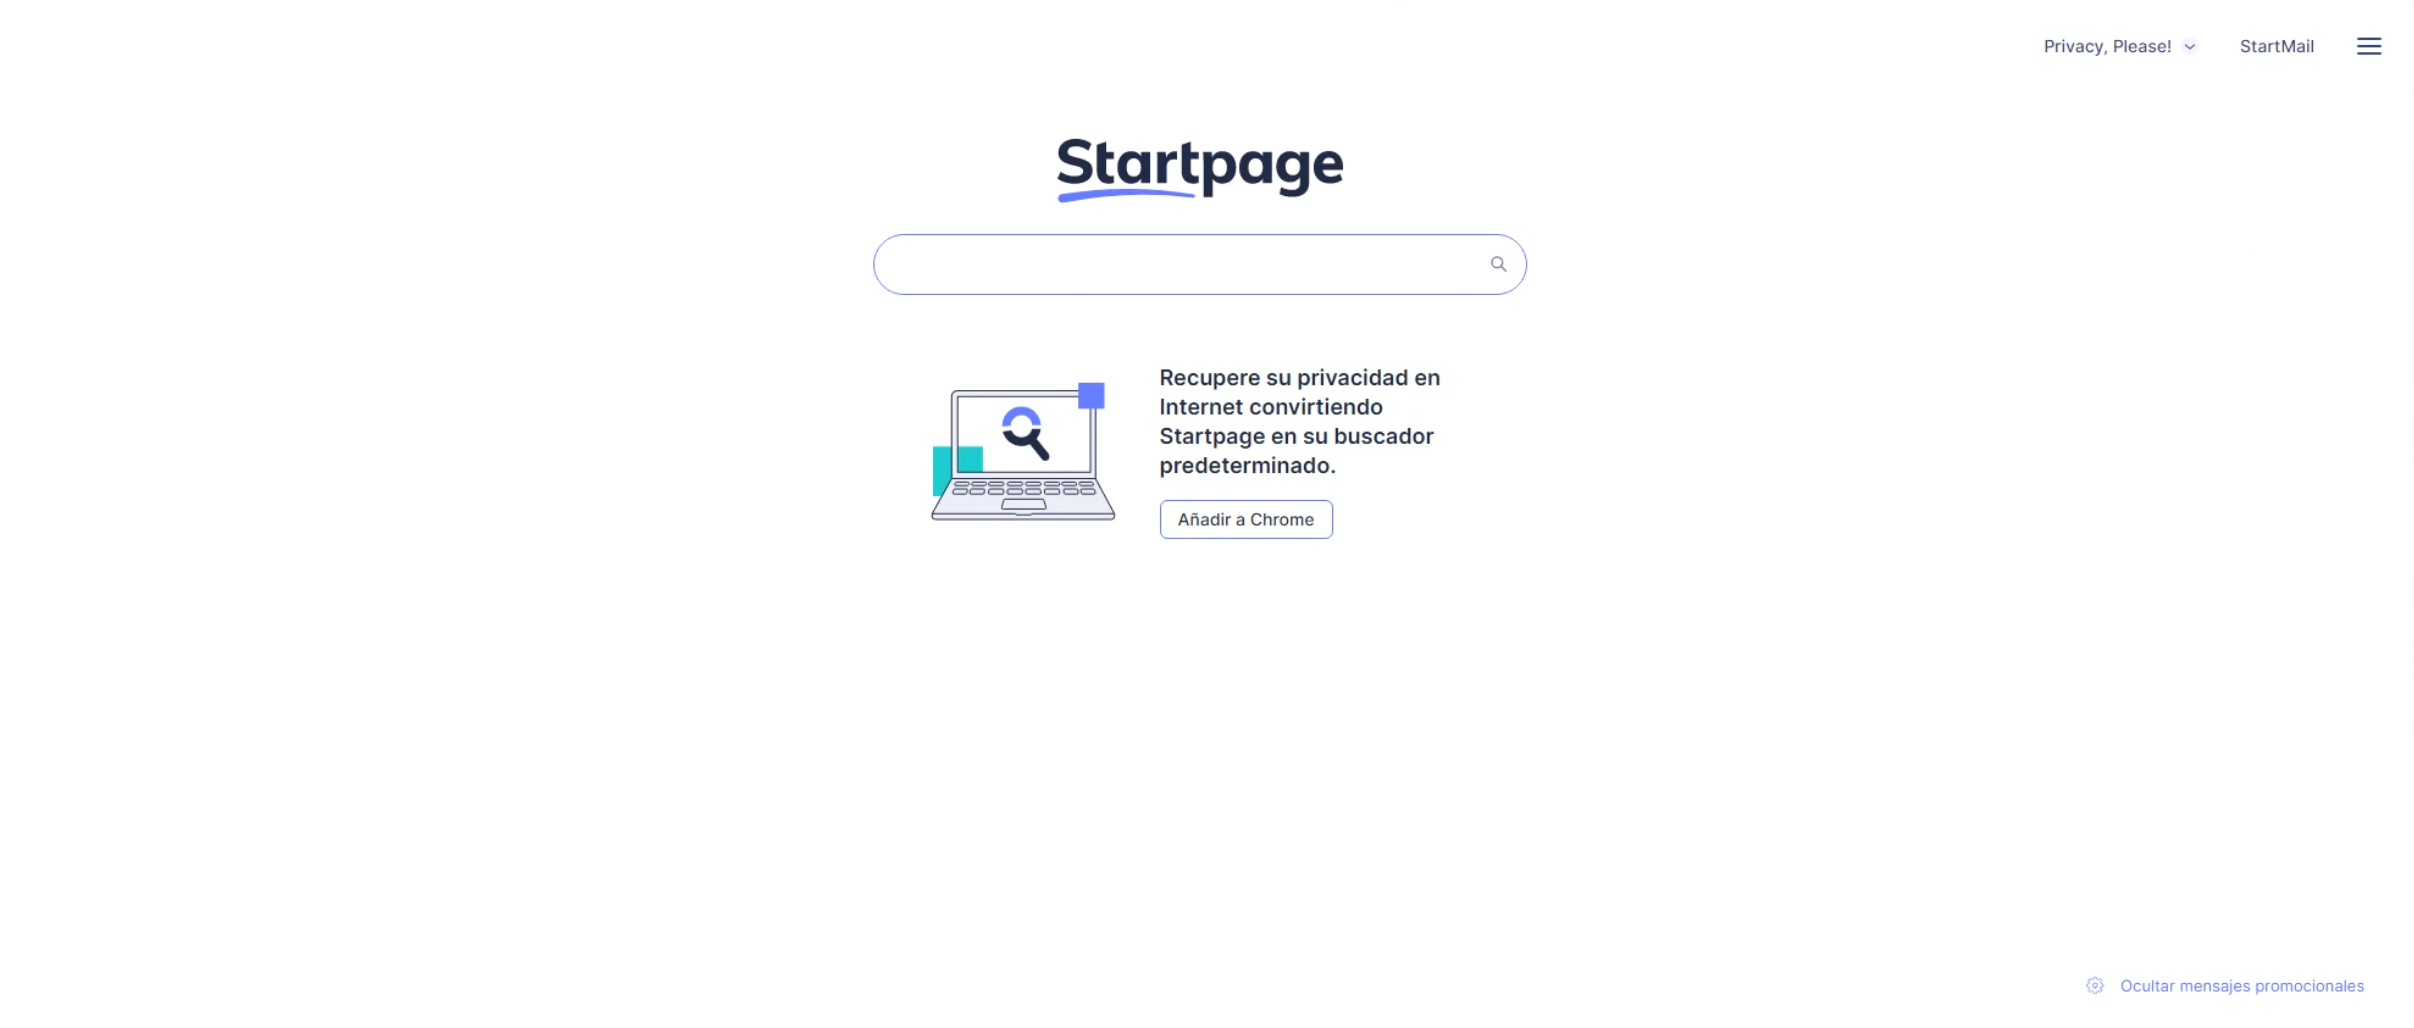 Buscadores aparte de Google: Startpage